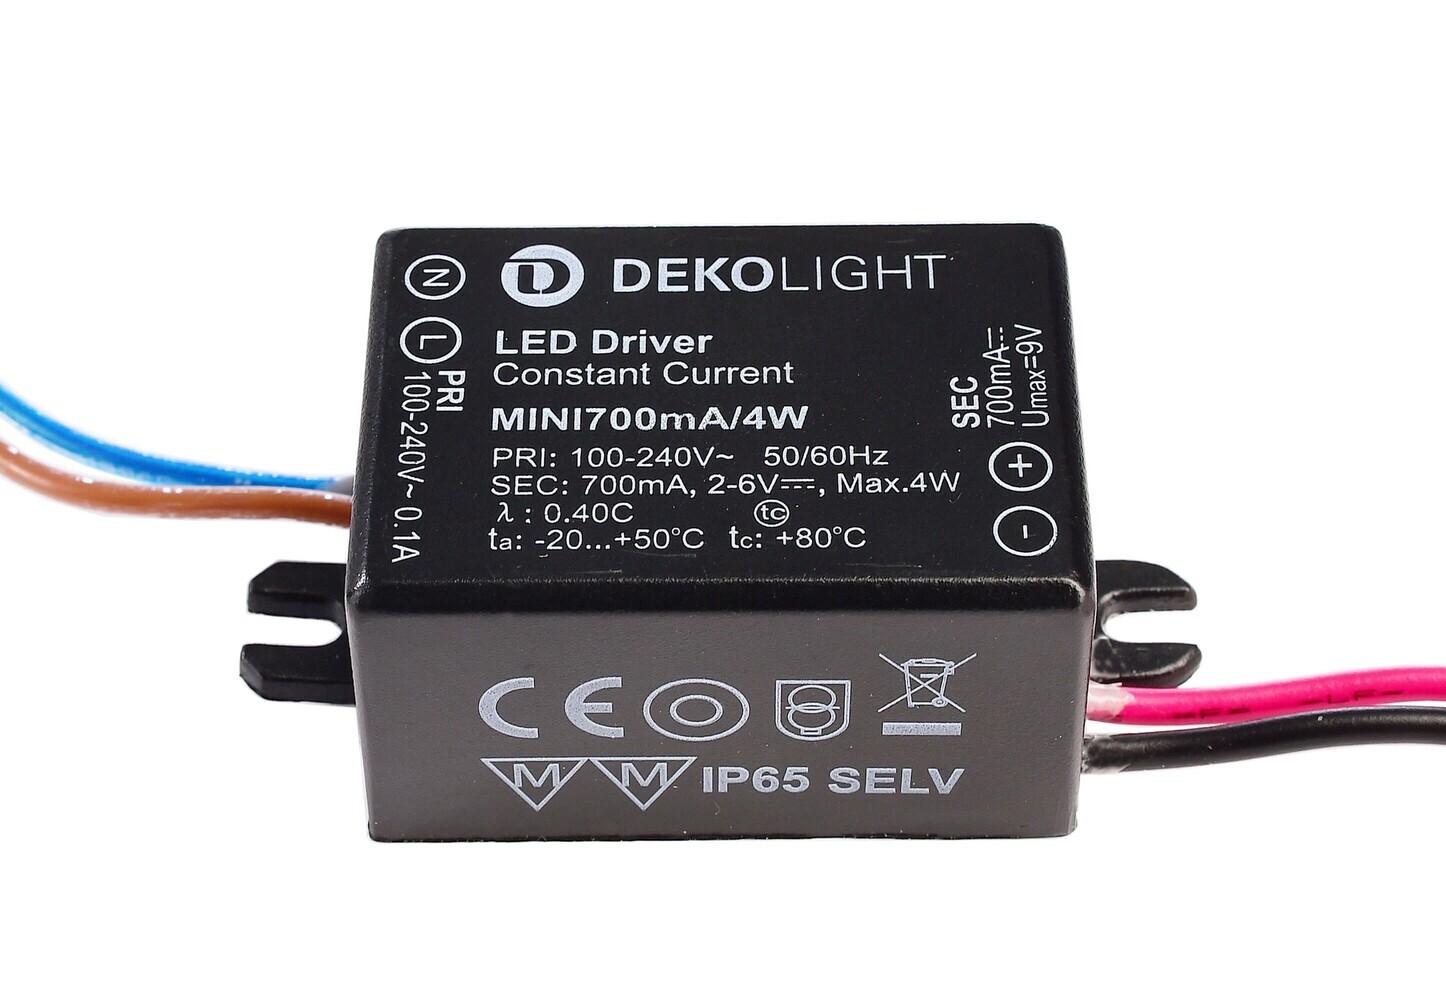 Hochwertiges, kompaktes LED Netzteil von Deko-Light mit konstanter Spannung